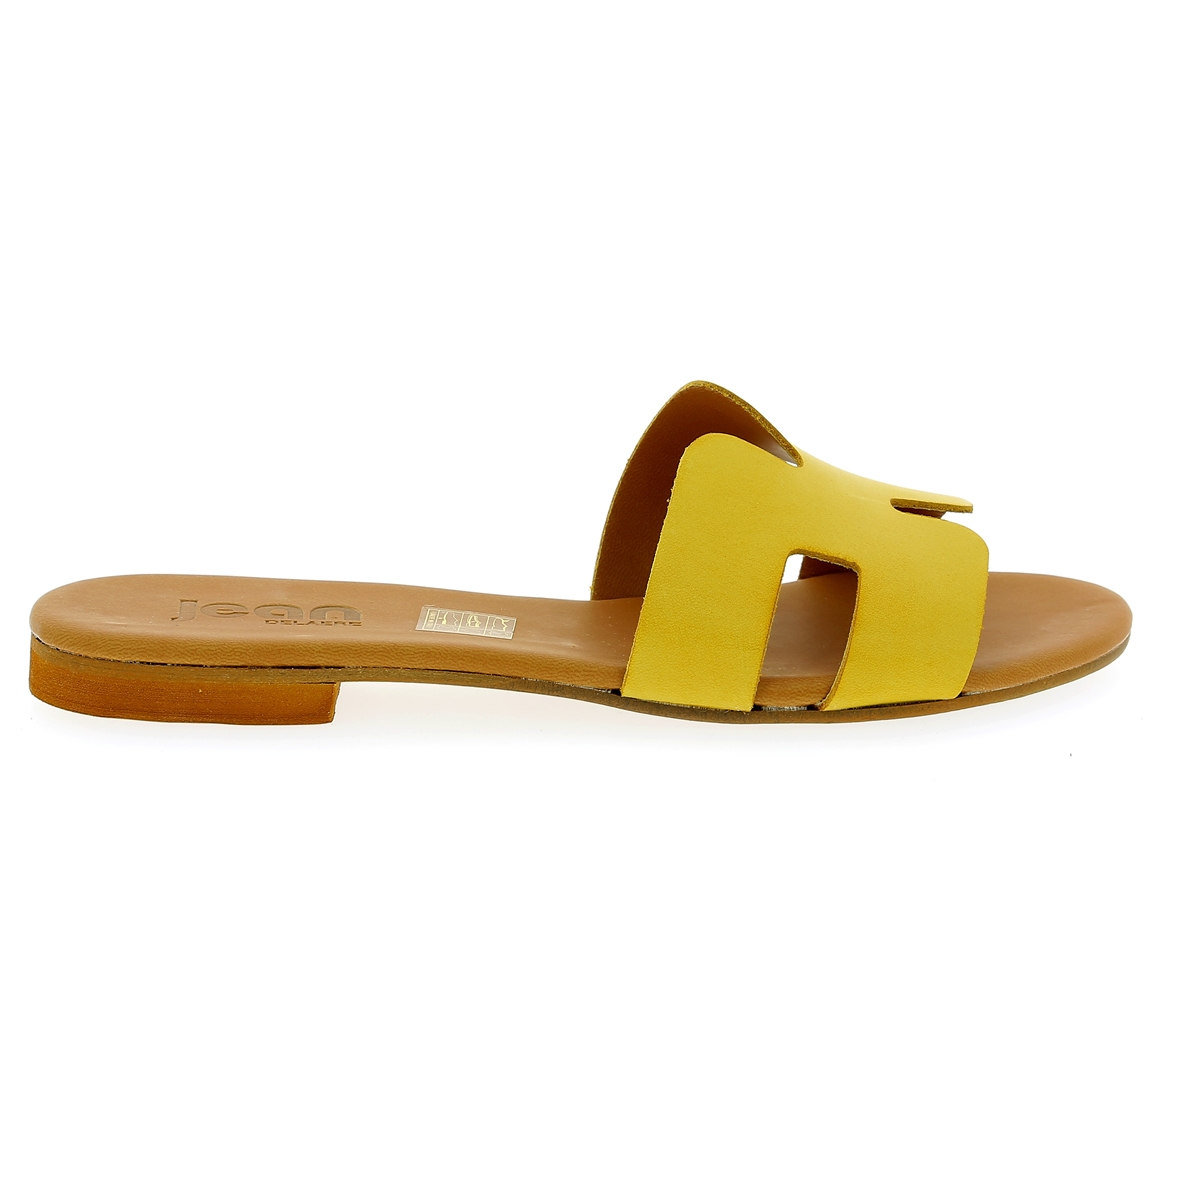 Delaere Muiltjes - slippers geel